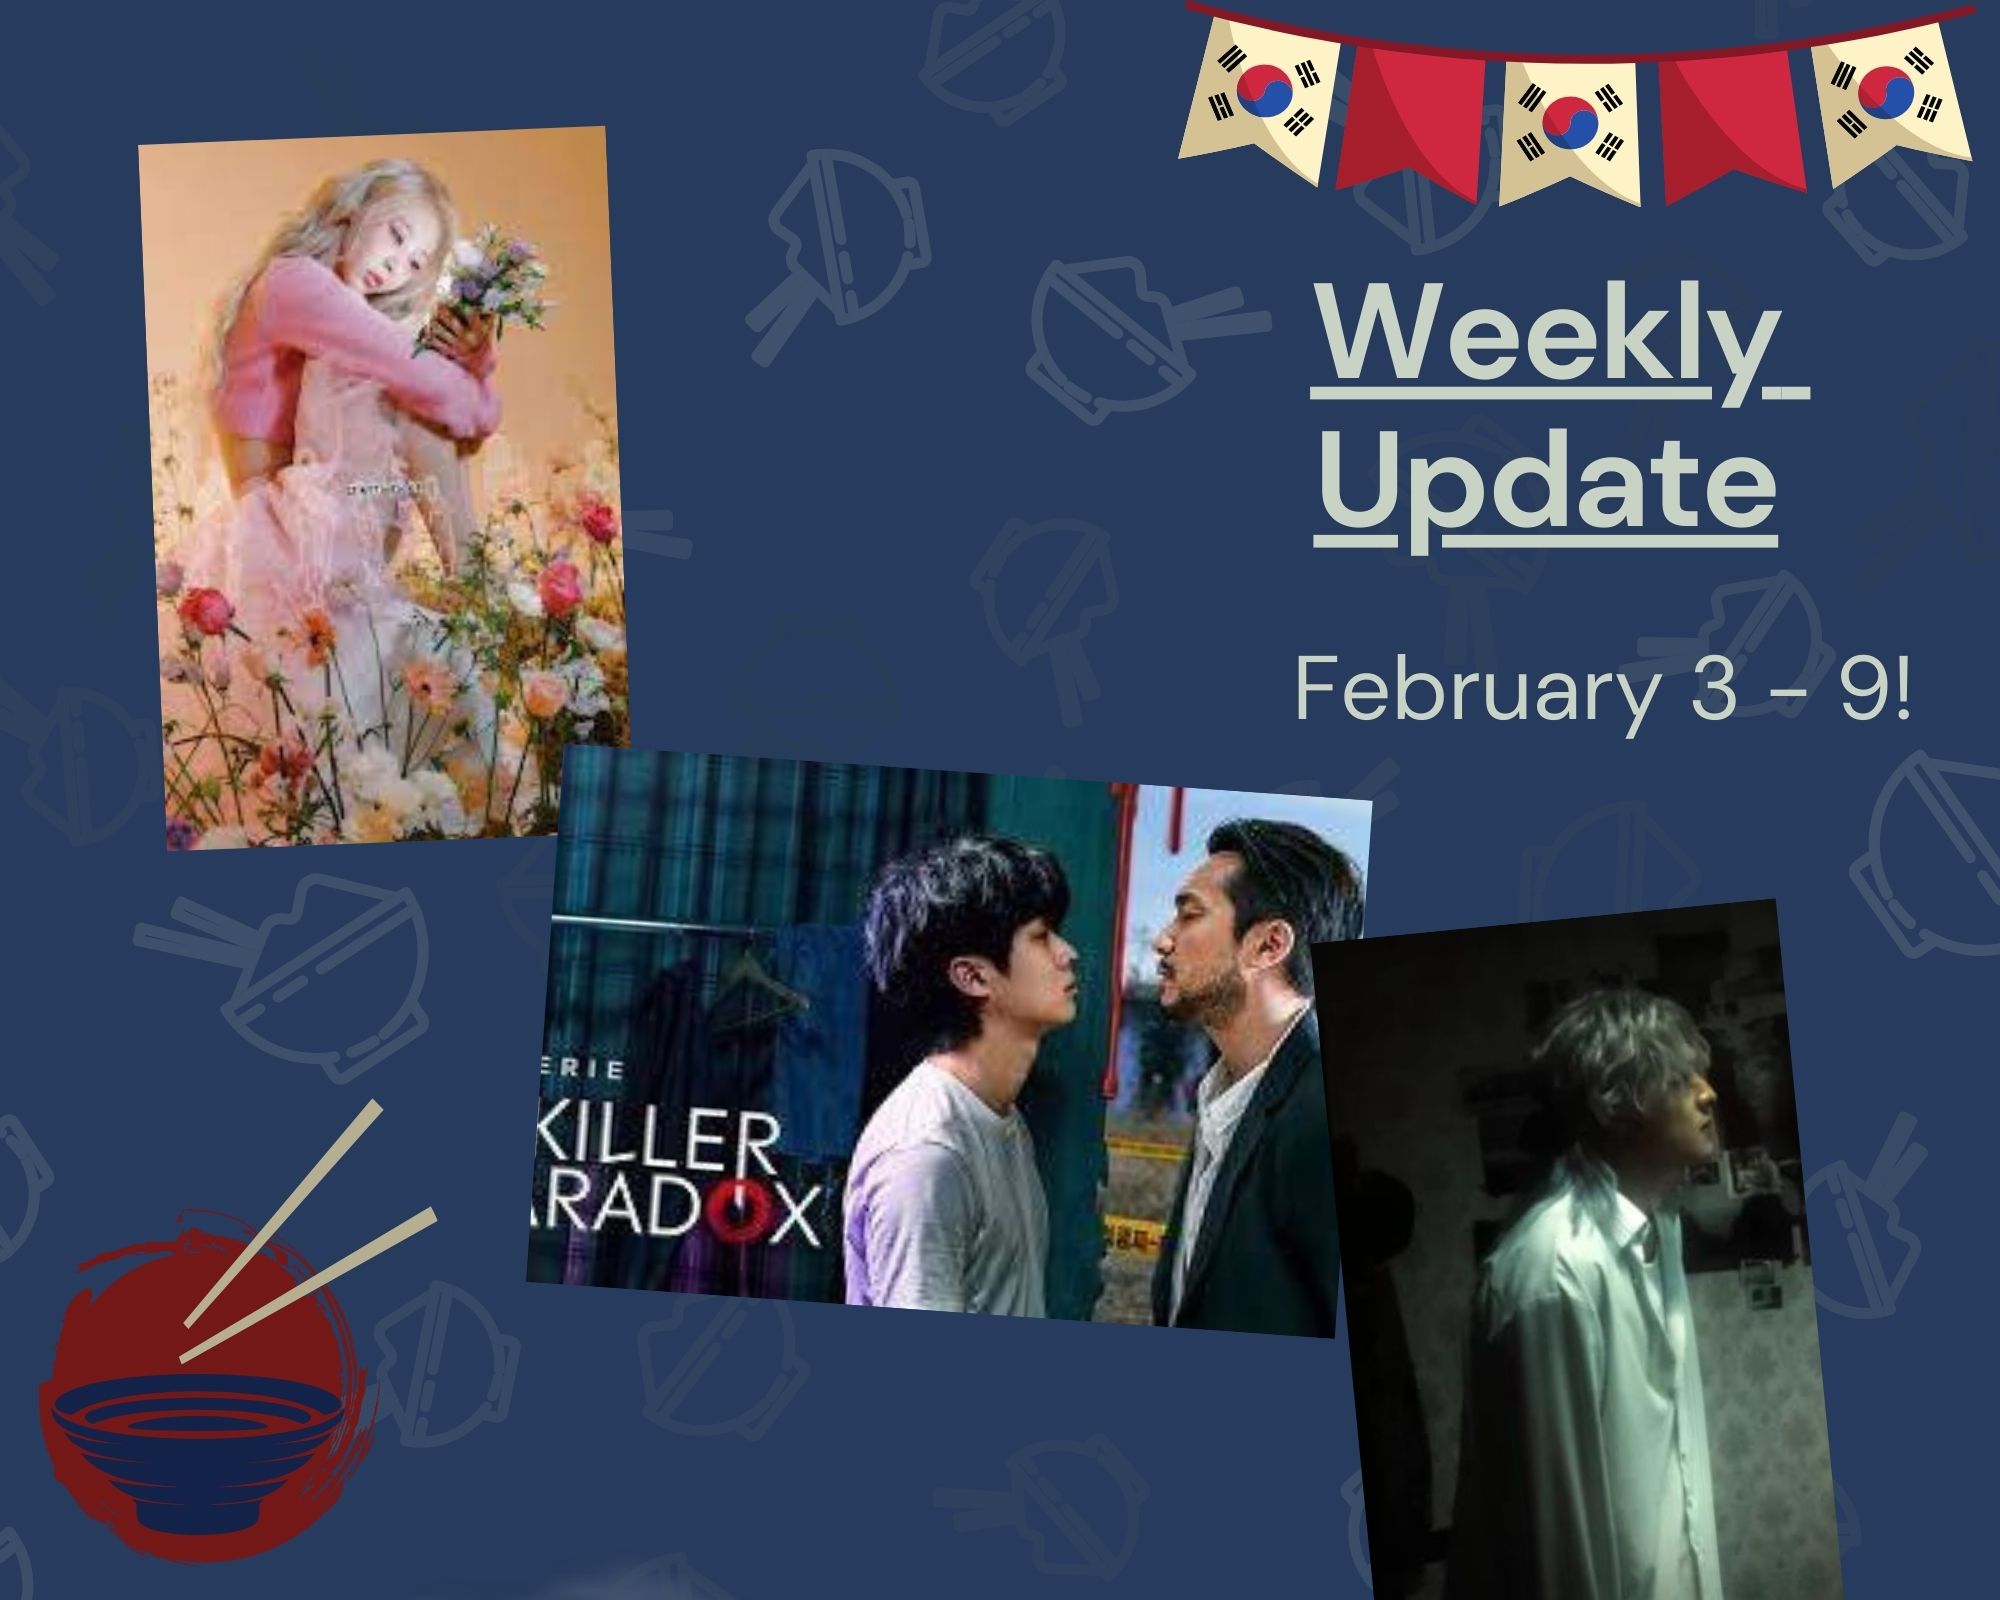 Weekly Update - February 3 - 9